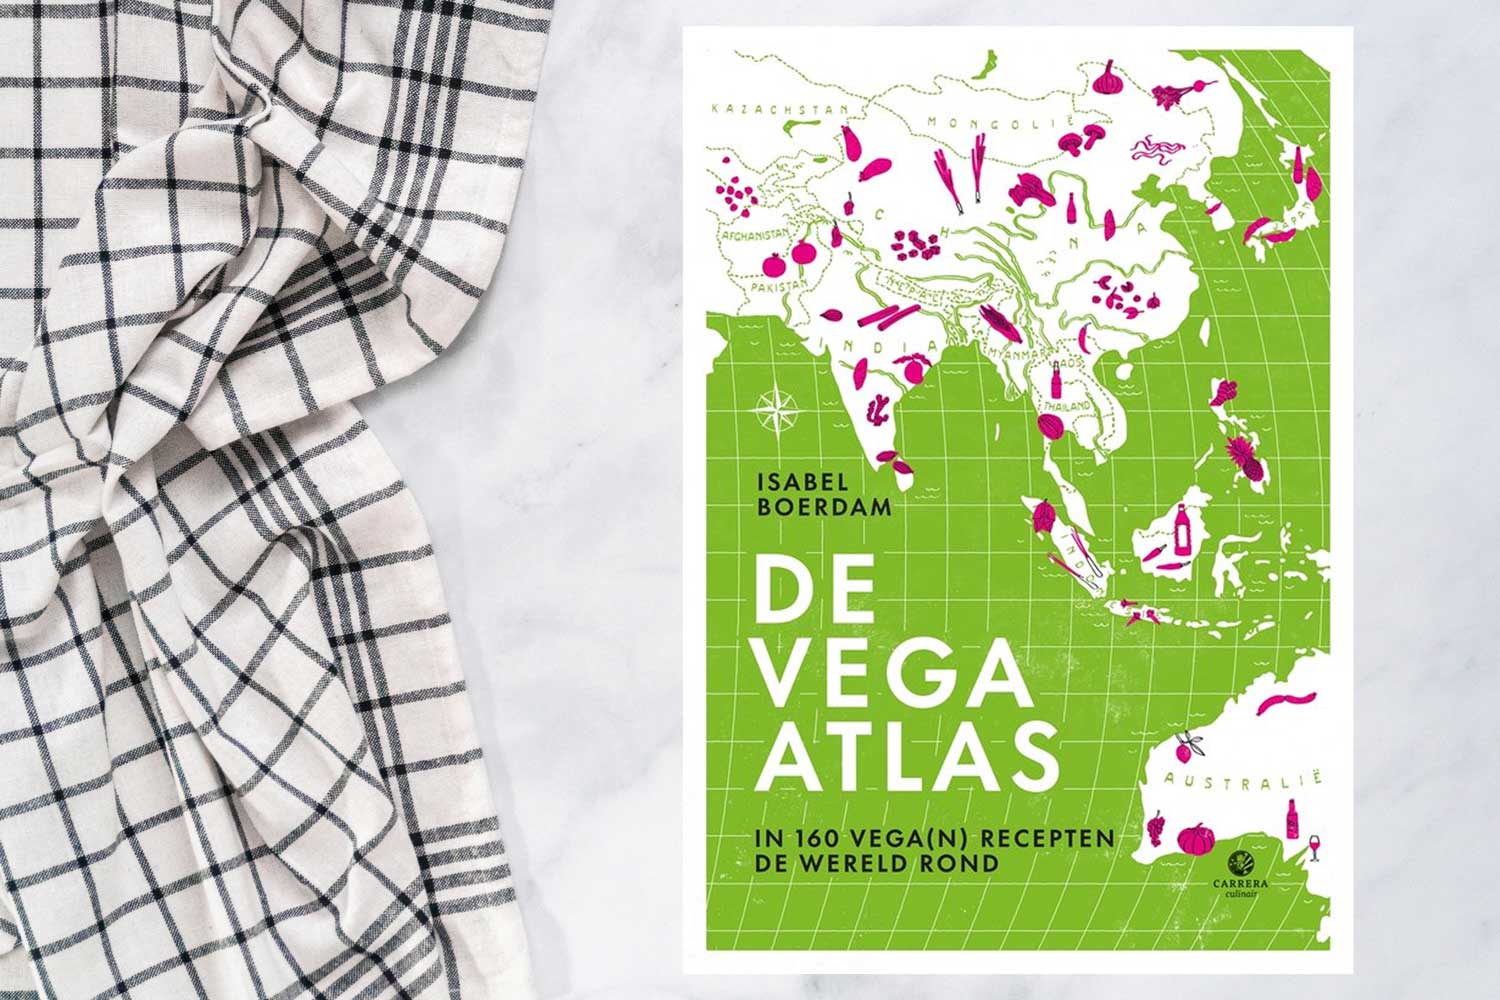 De vega atlas: in 160 vega(n) recepten de wereld rond